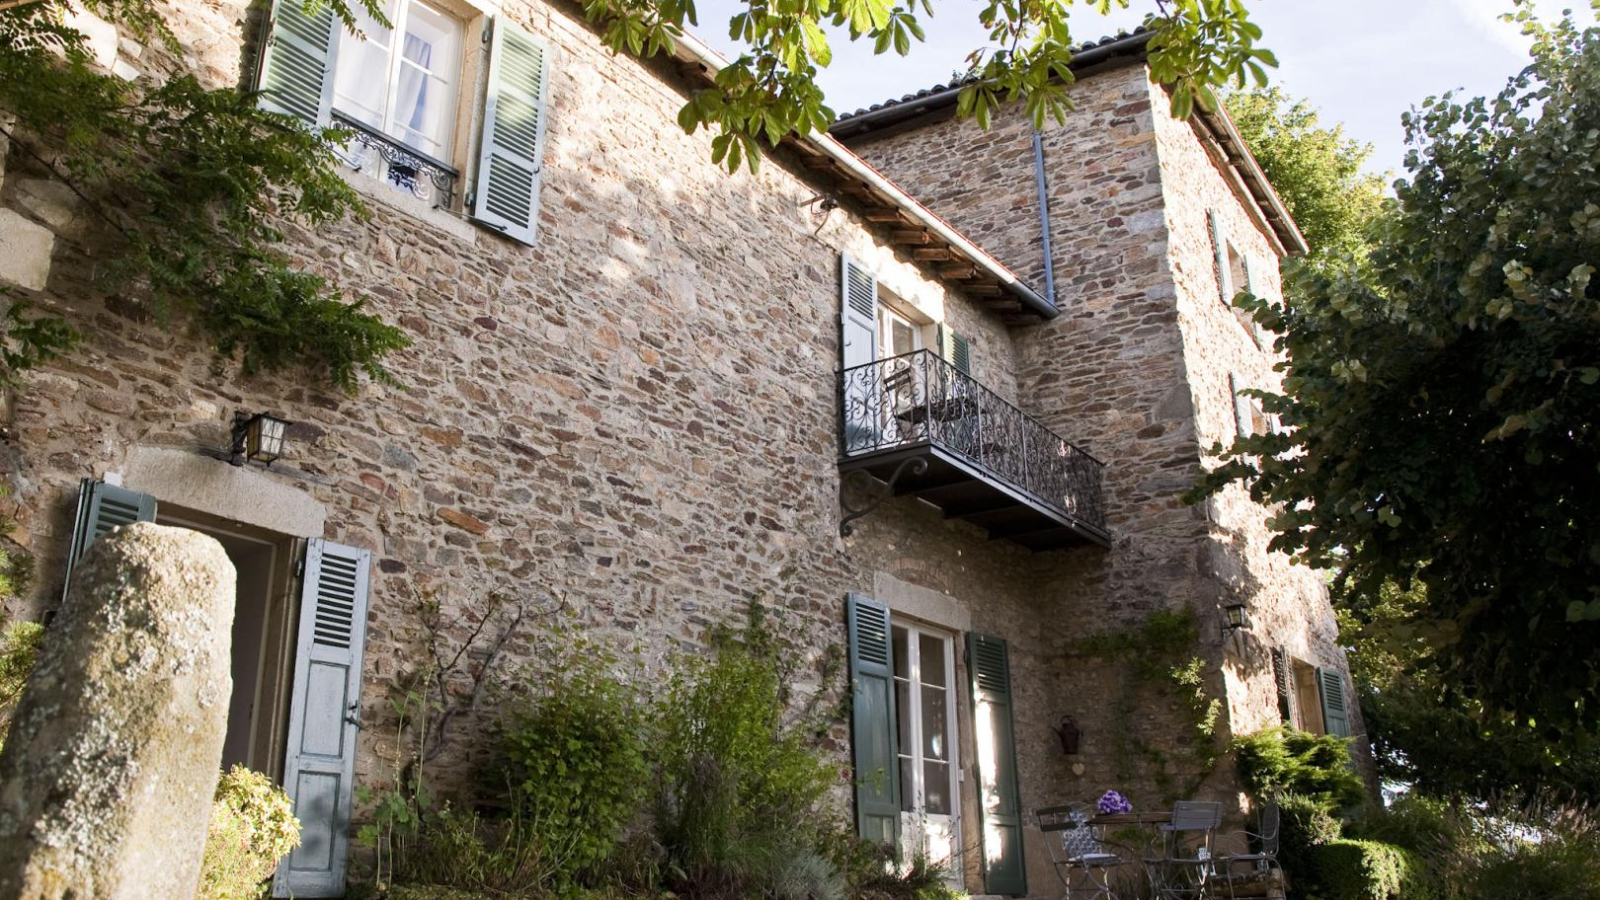 Chambres et Table d'Hôtes 'Château de Riverie' dans le village médiéval de Riverie -Lyonnais - Rhône.